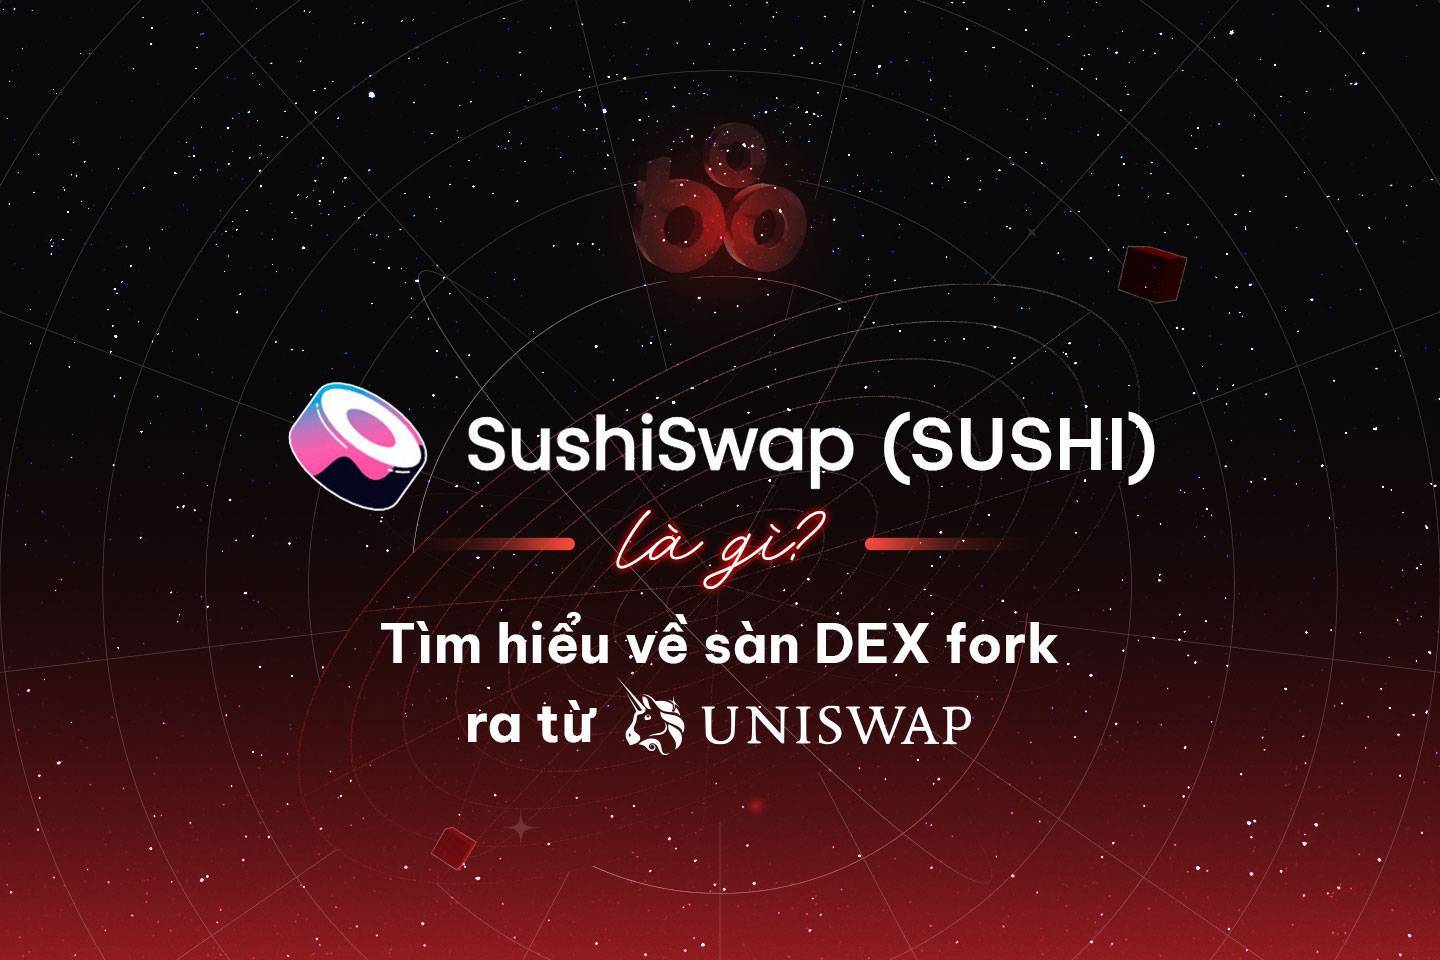 Sushiswap sushi Là Gì Tìm Hiểu Về Sàn Dex Fork Ra Từ Uniswap